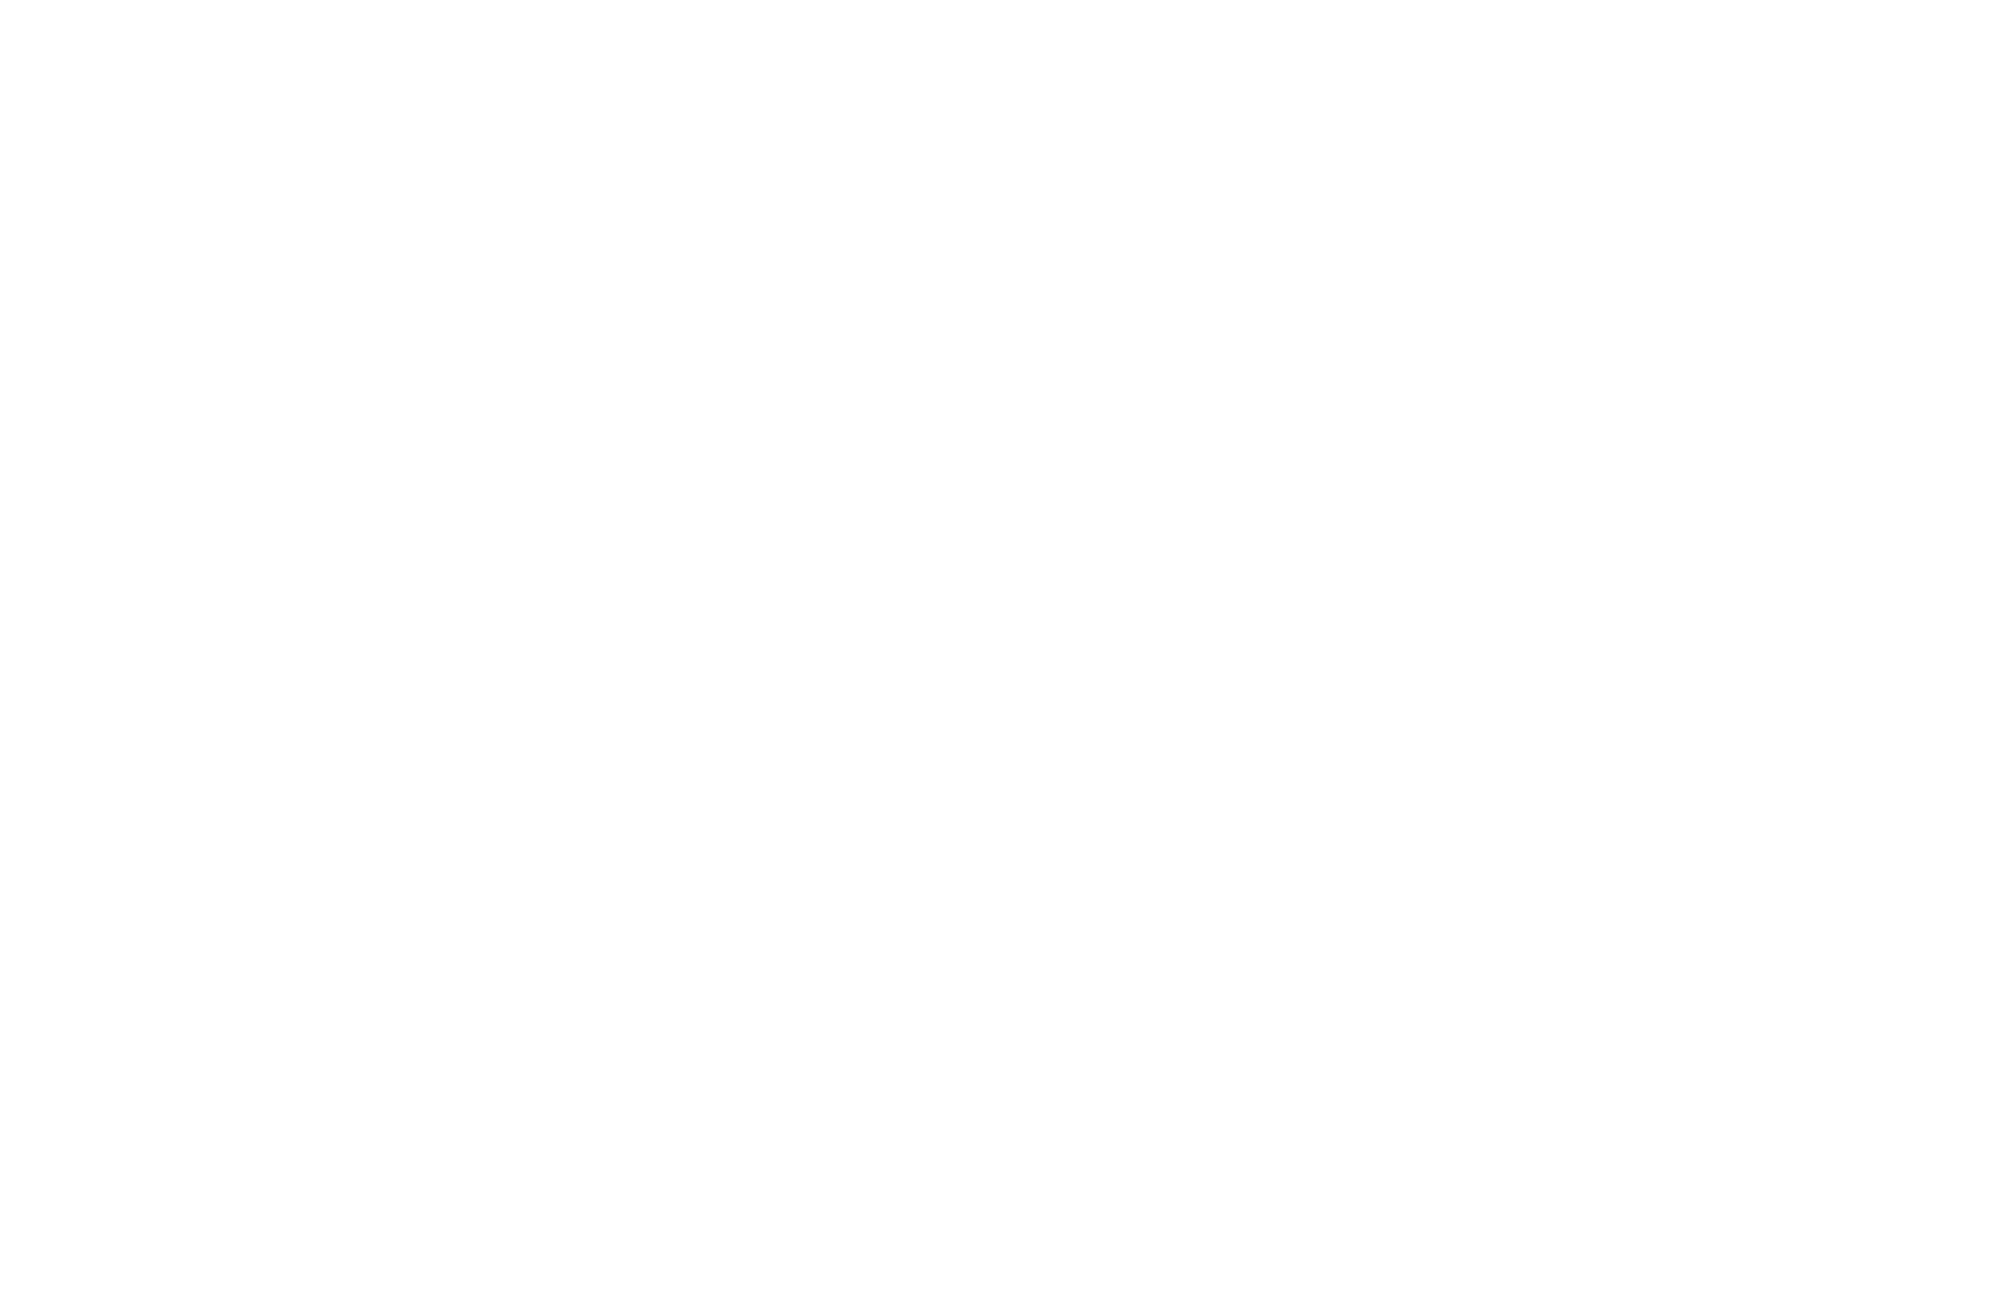 colt logo png